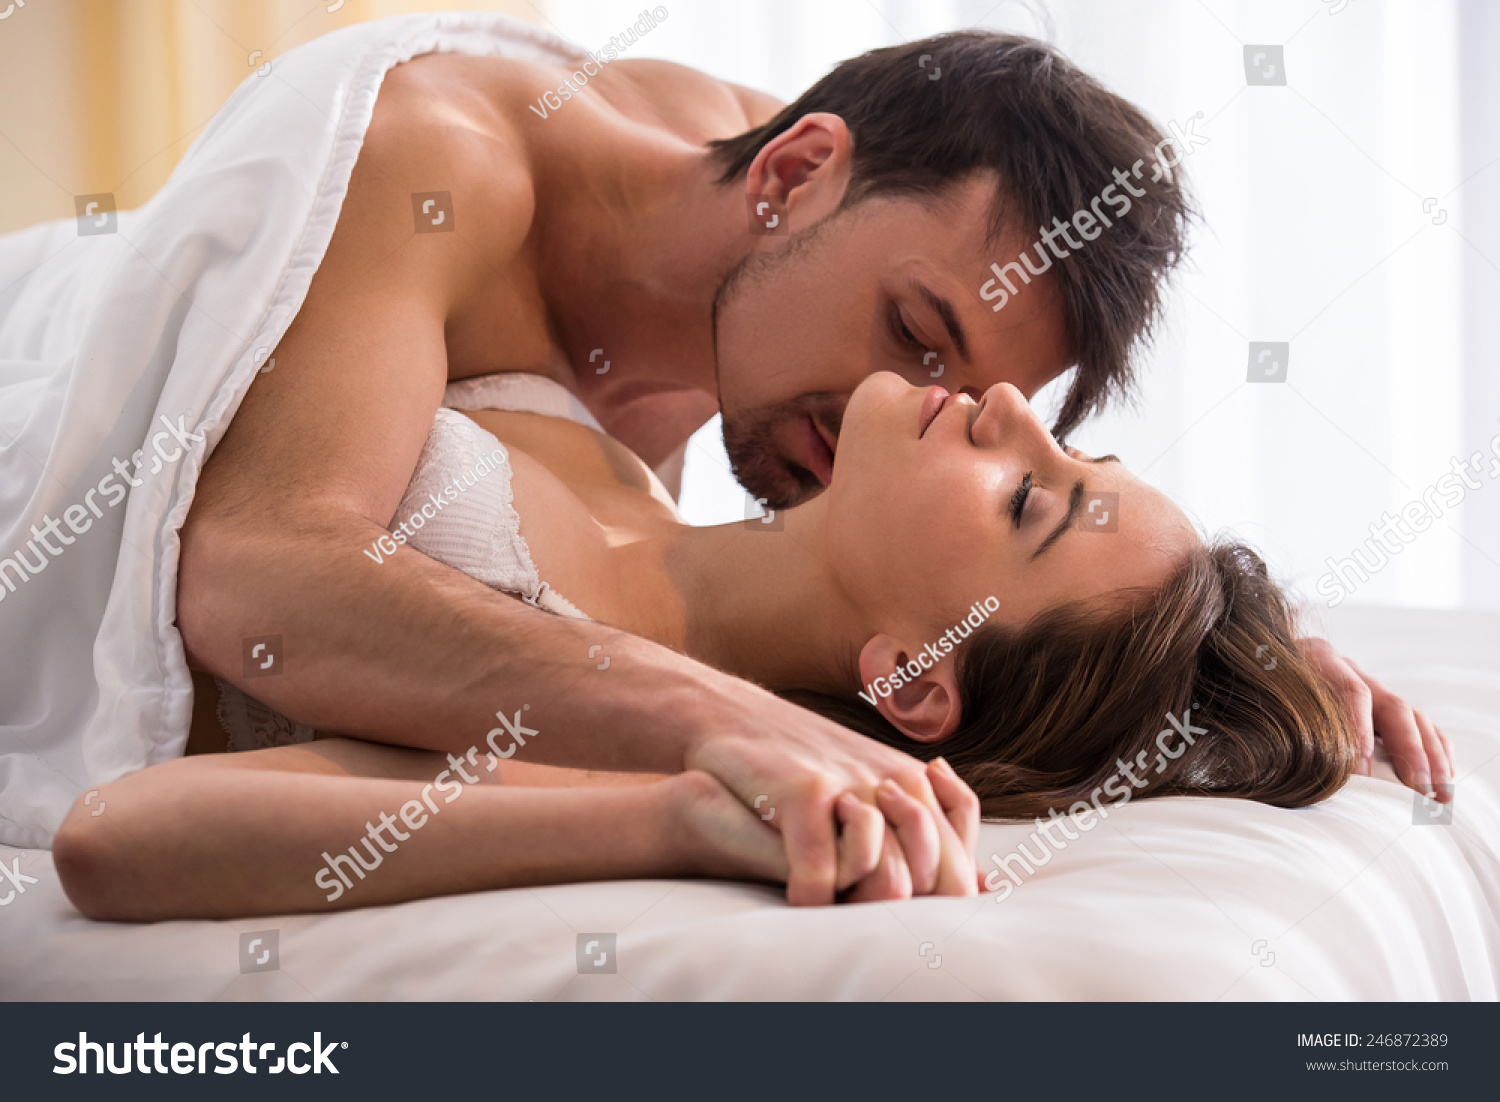 Romantic Porn Pics 77